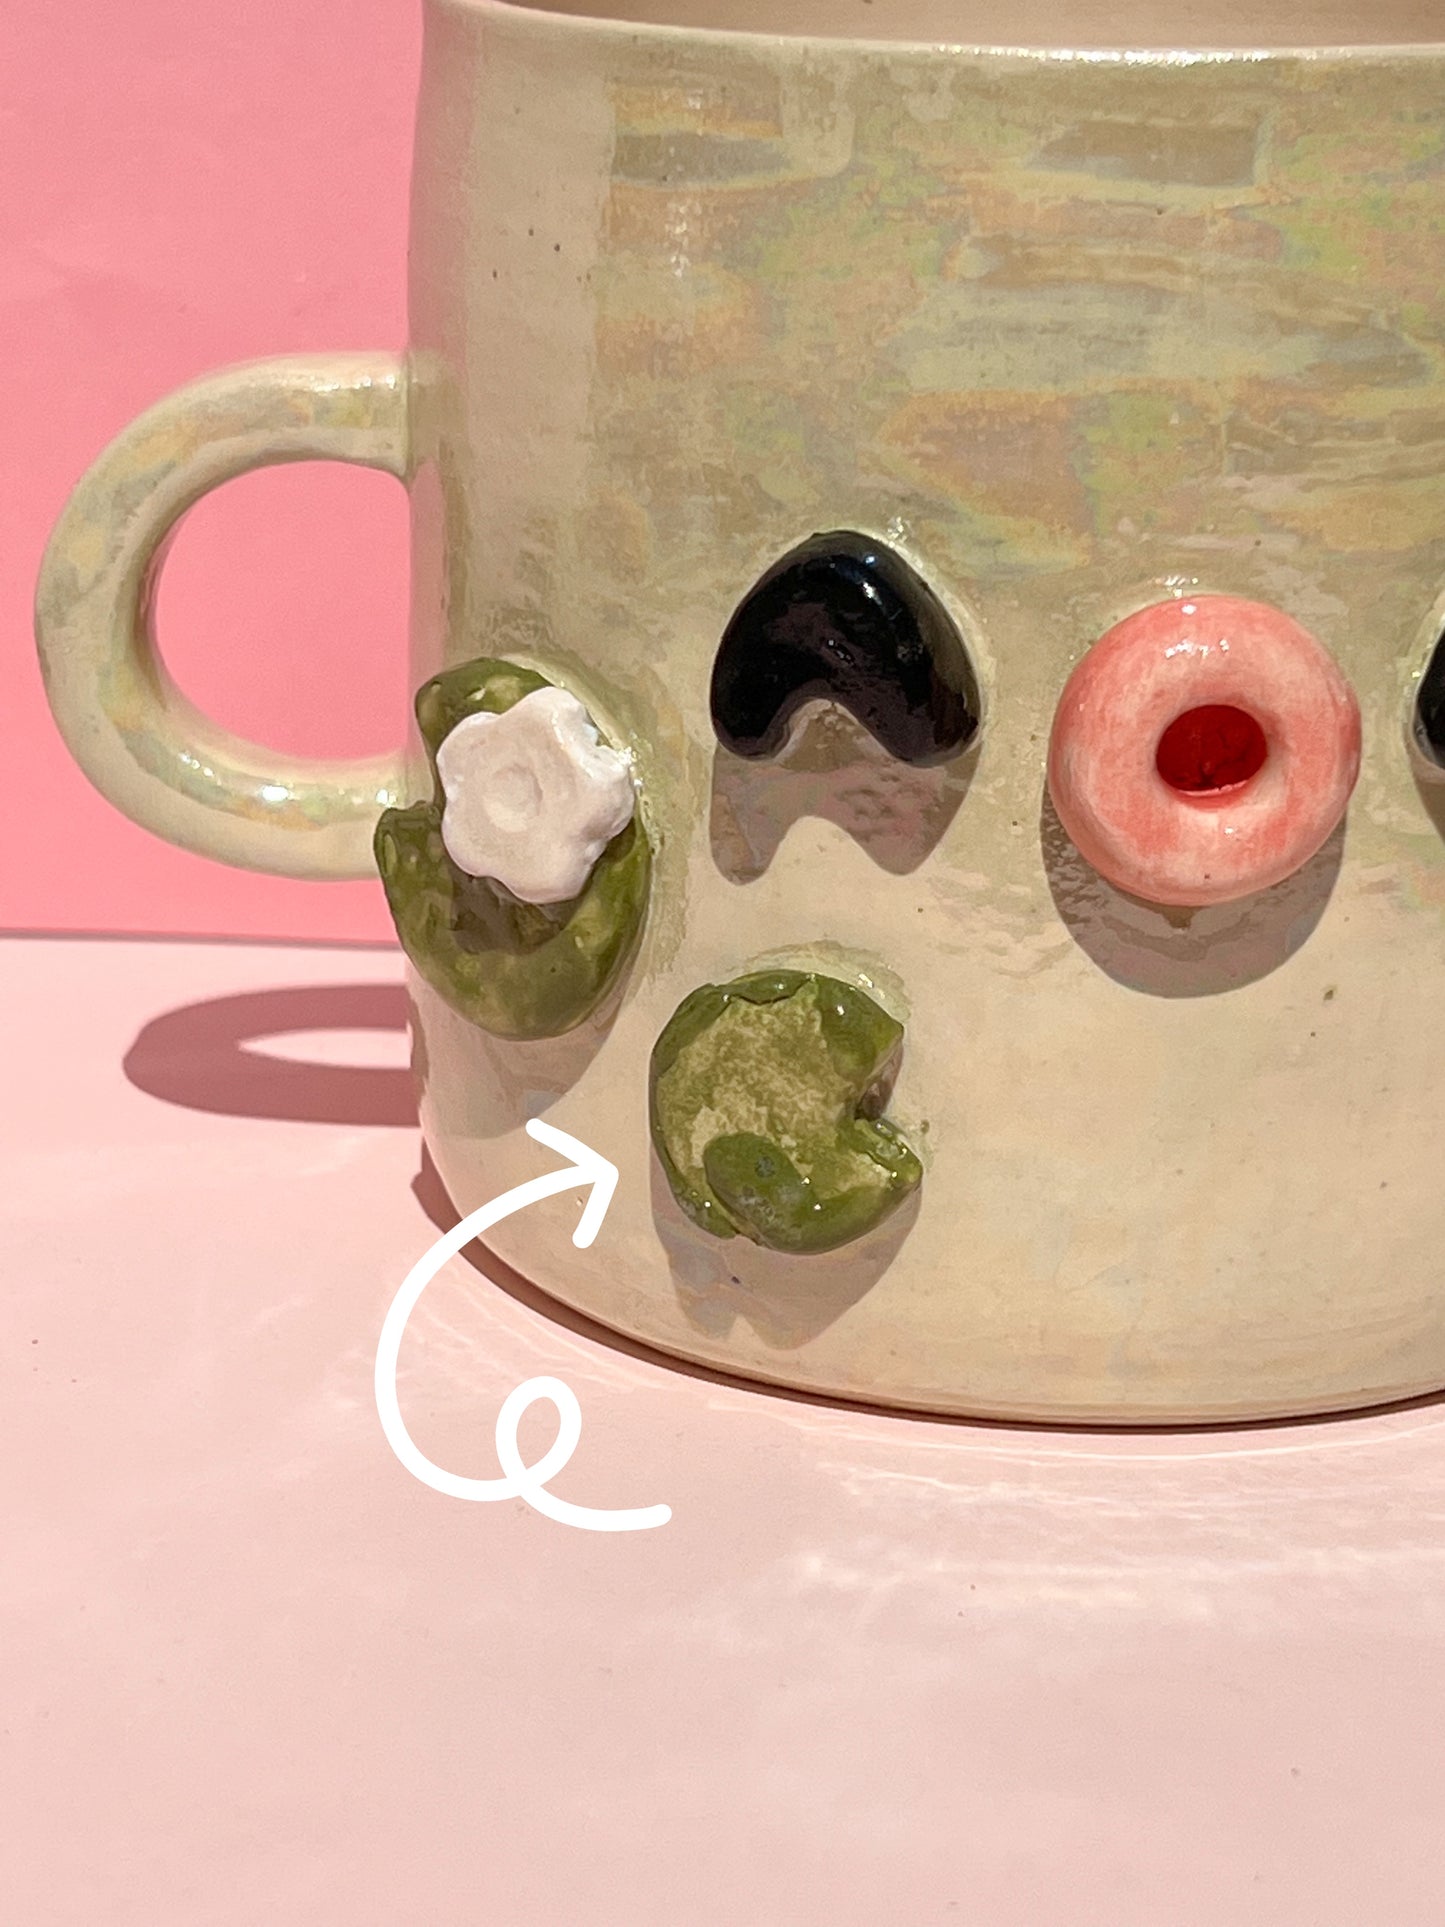 Lilypad mug (seconds)